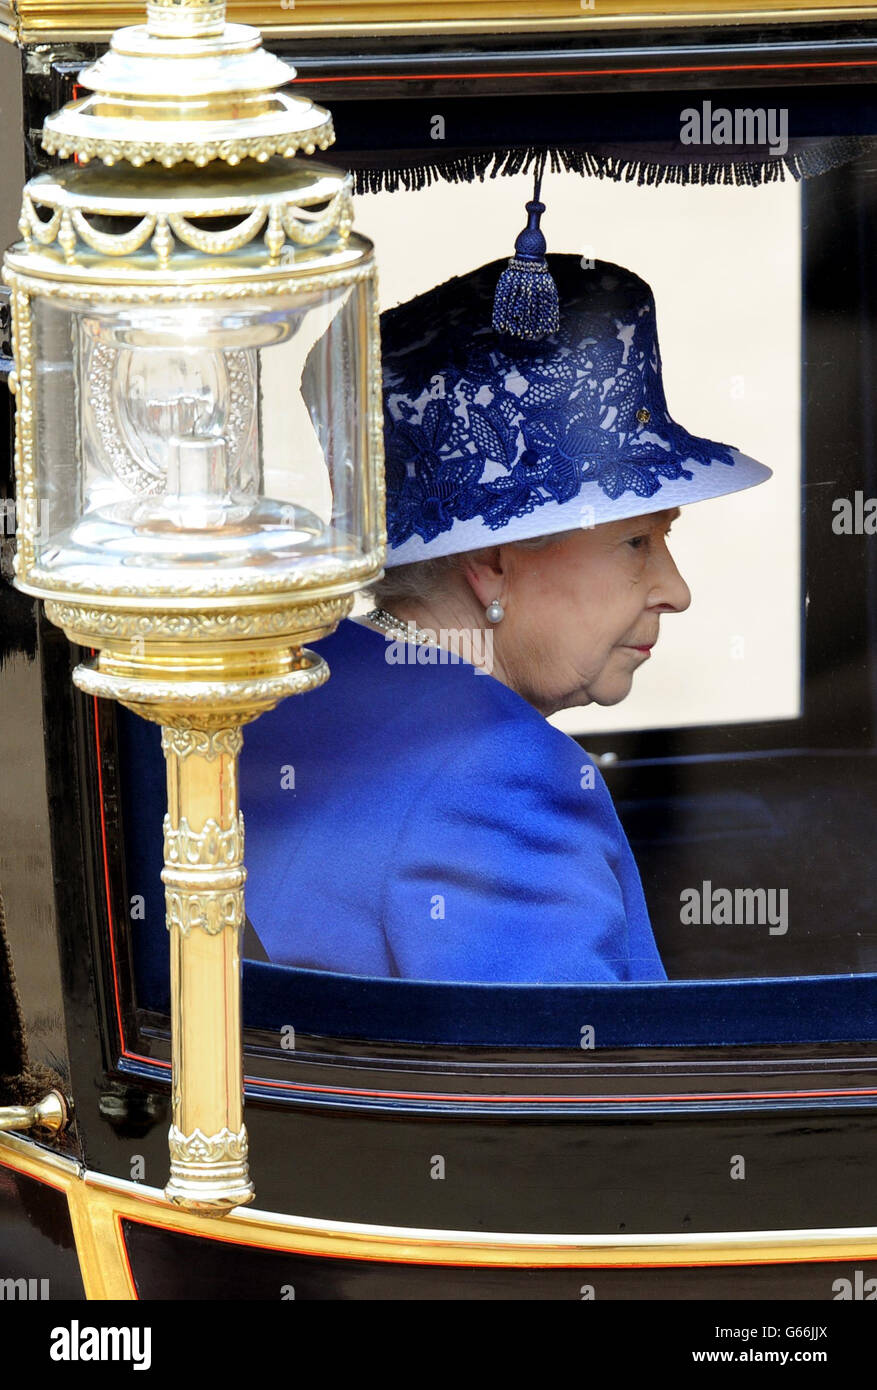 La reine Elizabeth II arrive à Horse Guards Parade, Londres, pour assister à Trooping the Color. Banque D'Images